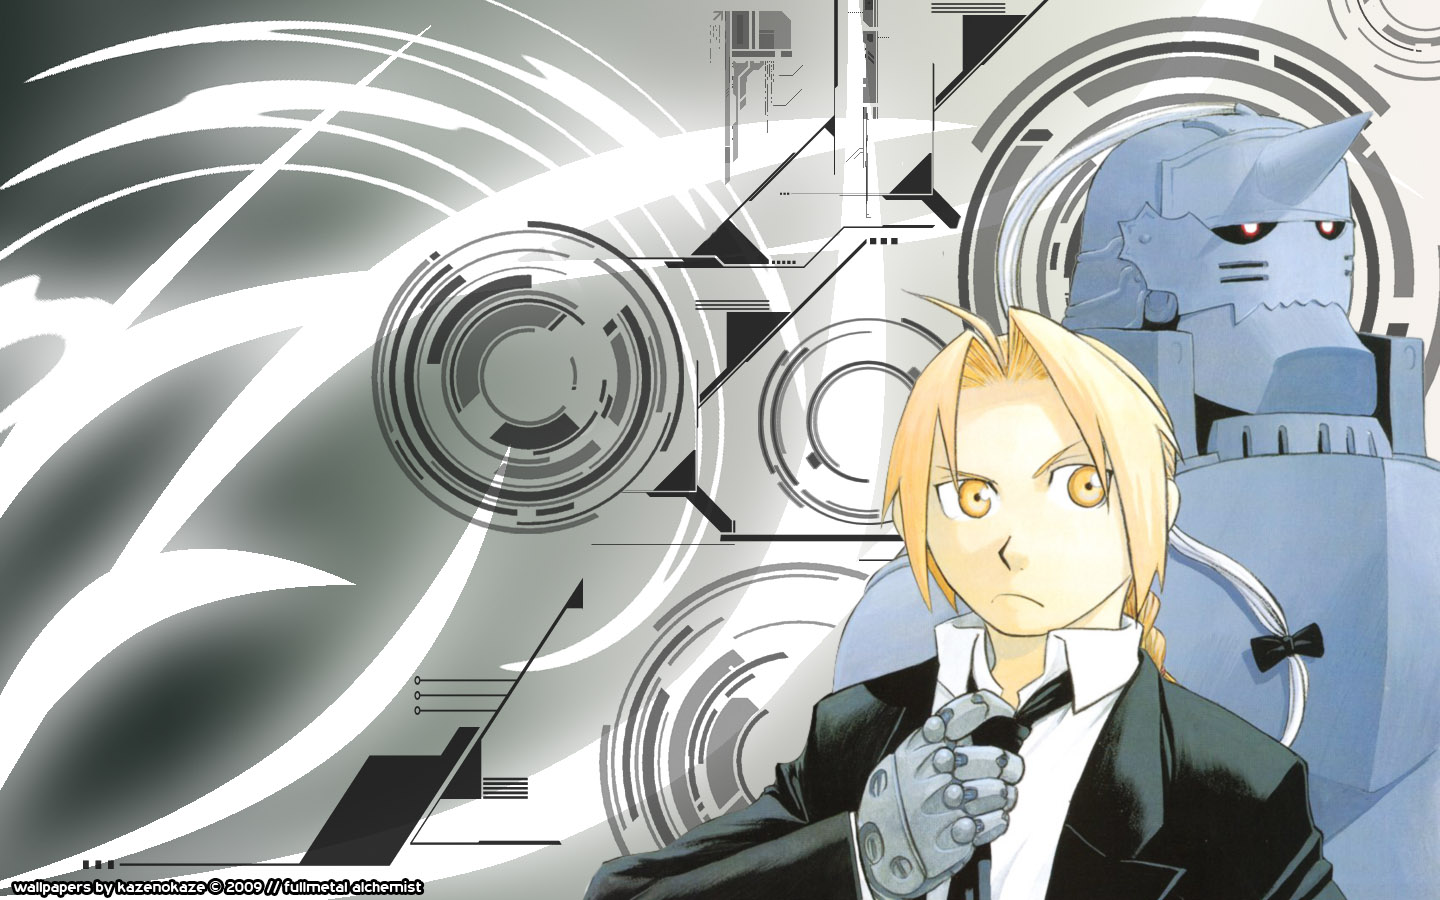 fondo de pantalla de anime 1440x900,dibujos animados,ilustración,anime,cg artwork,diseño gráfico